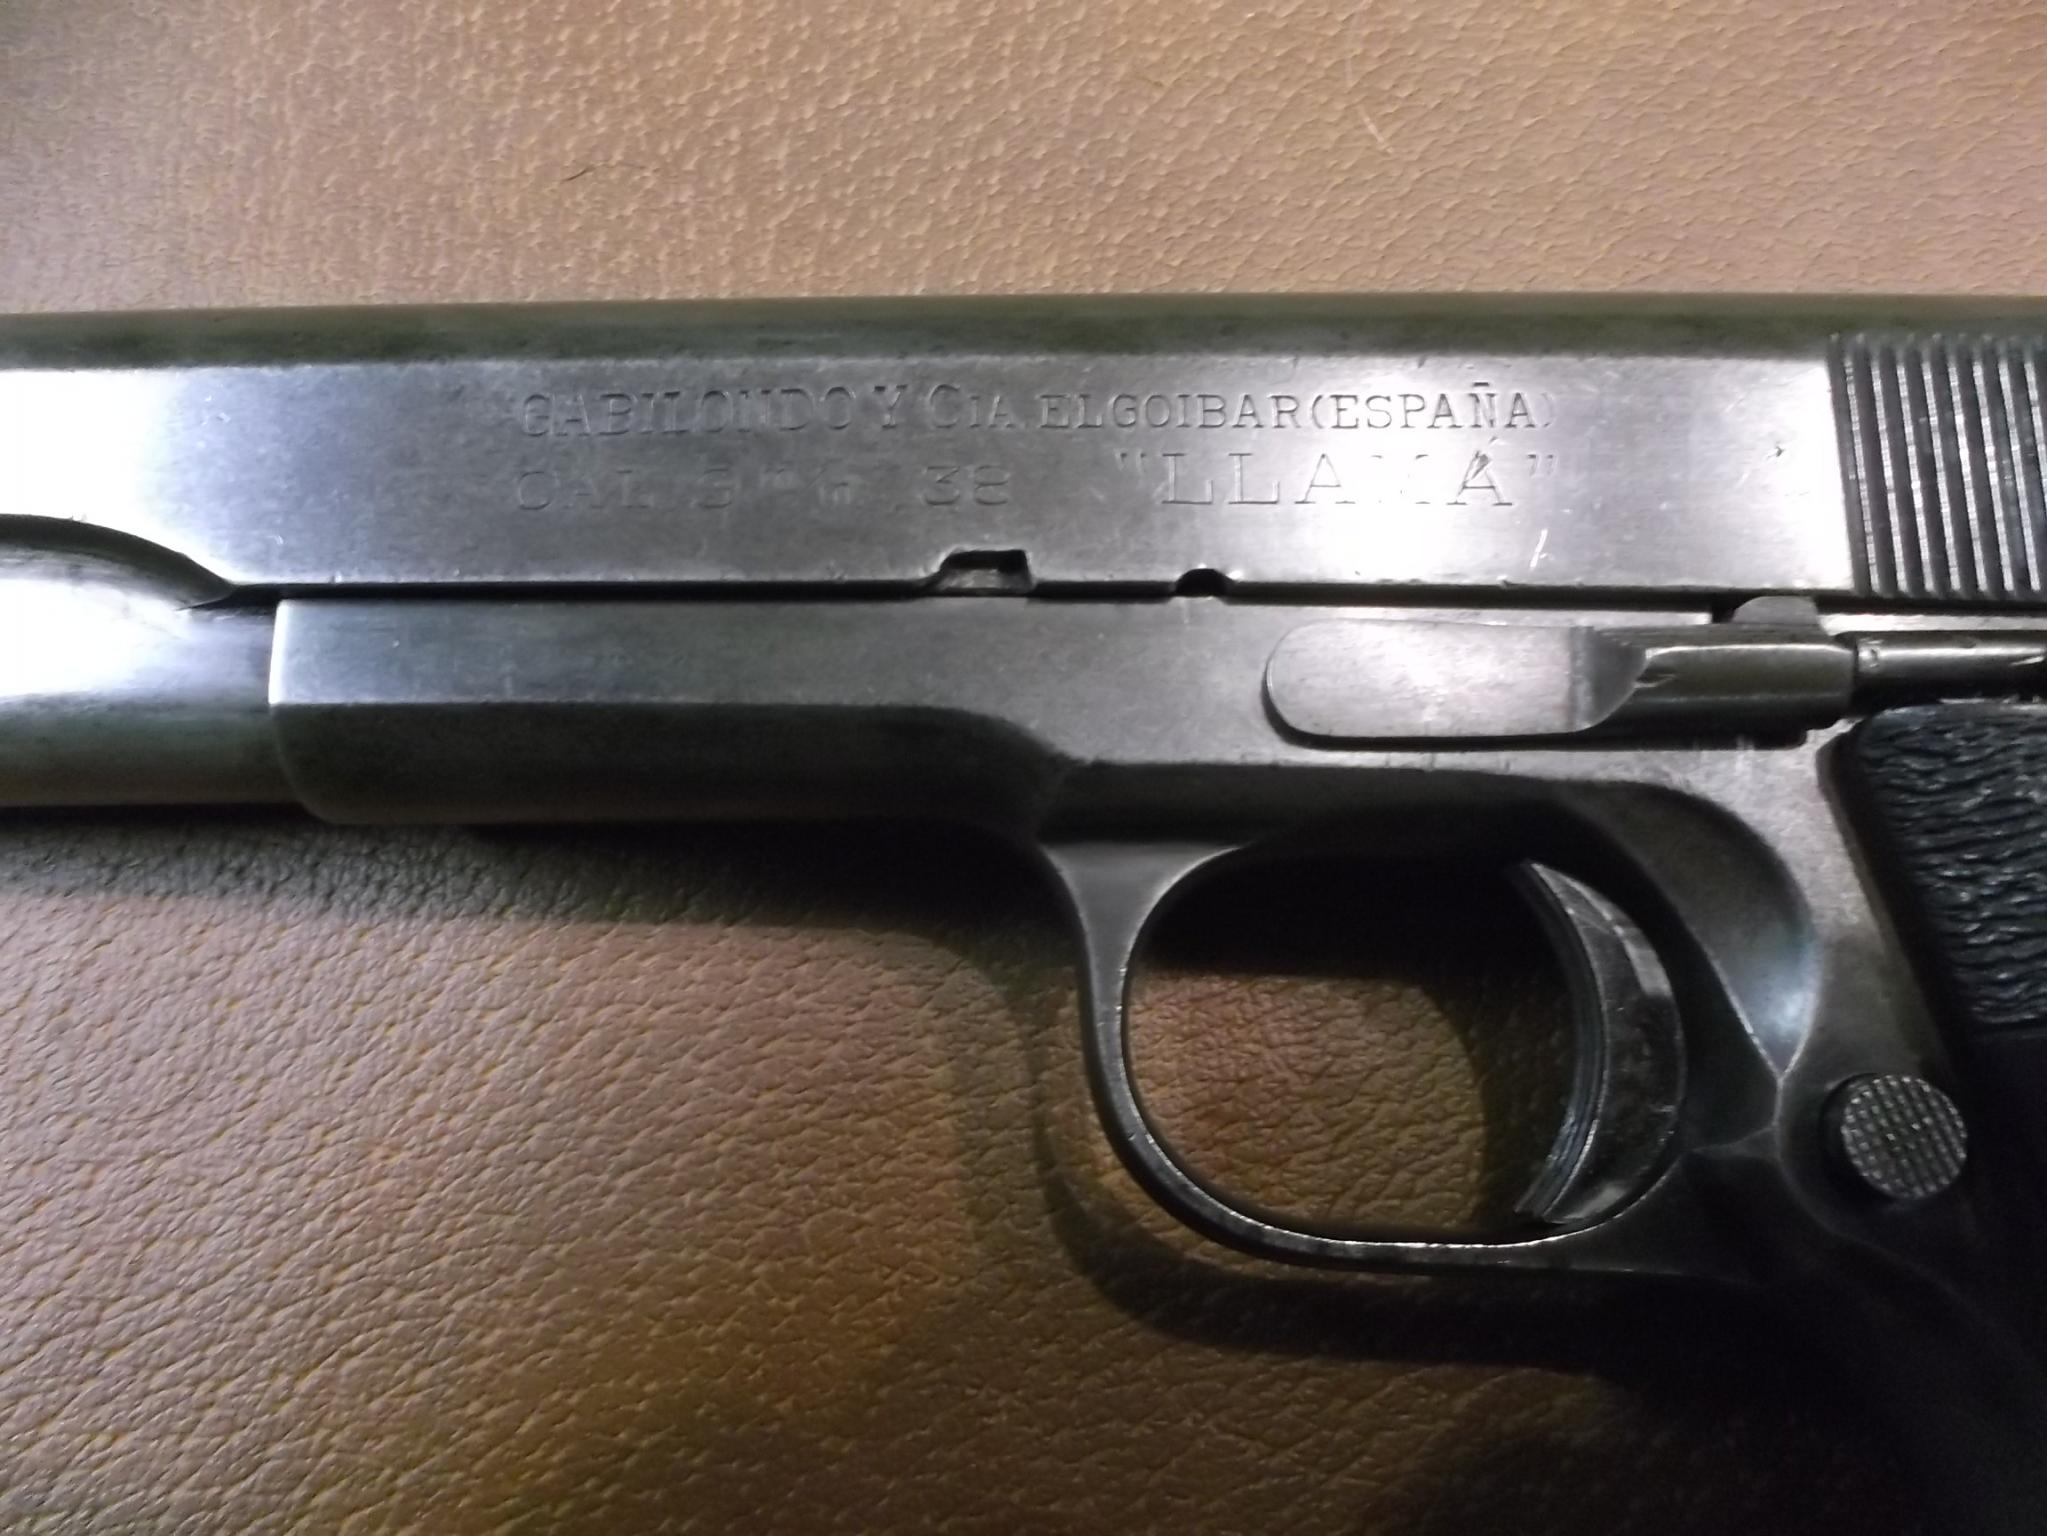 Llama handgun serial number